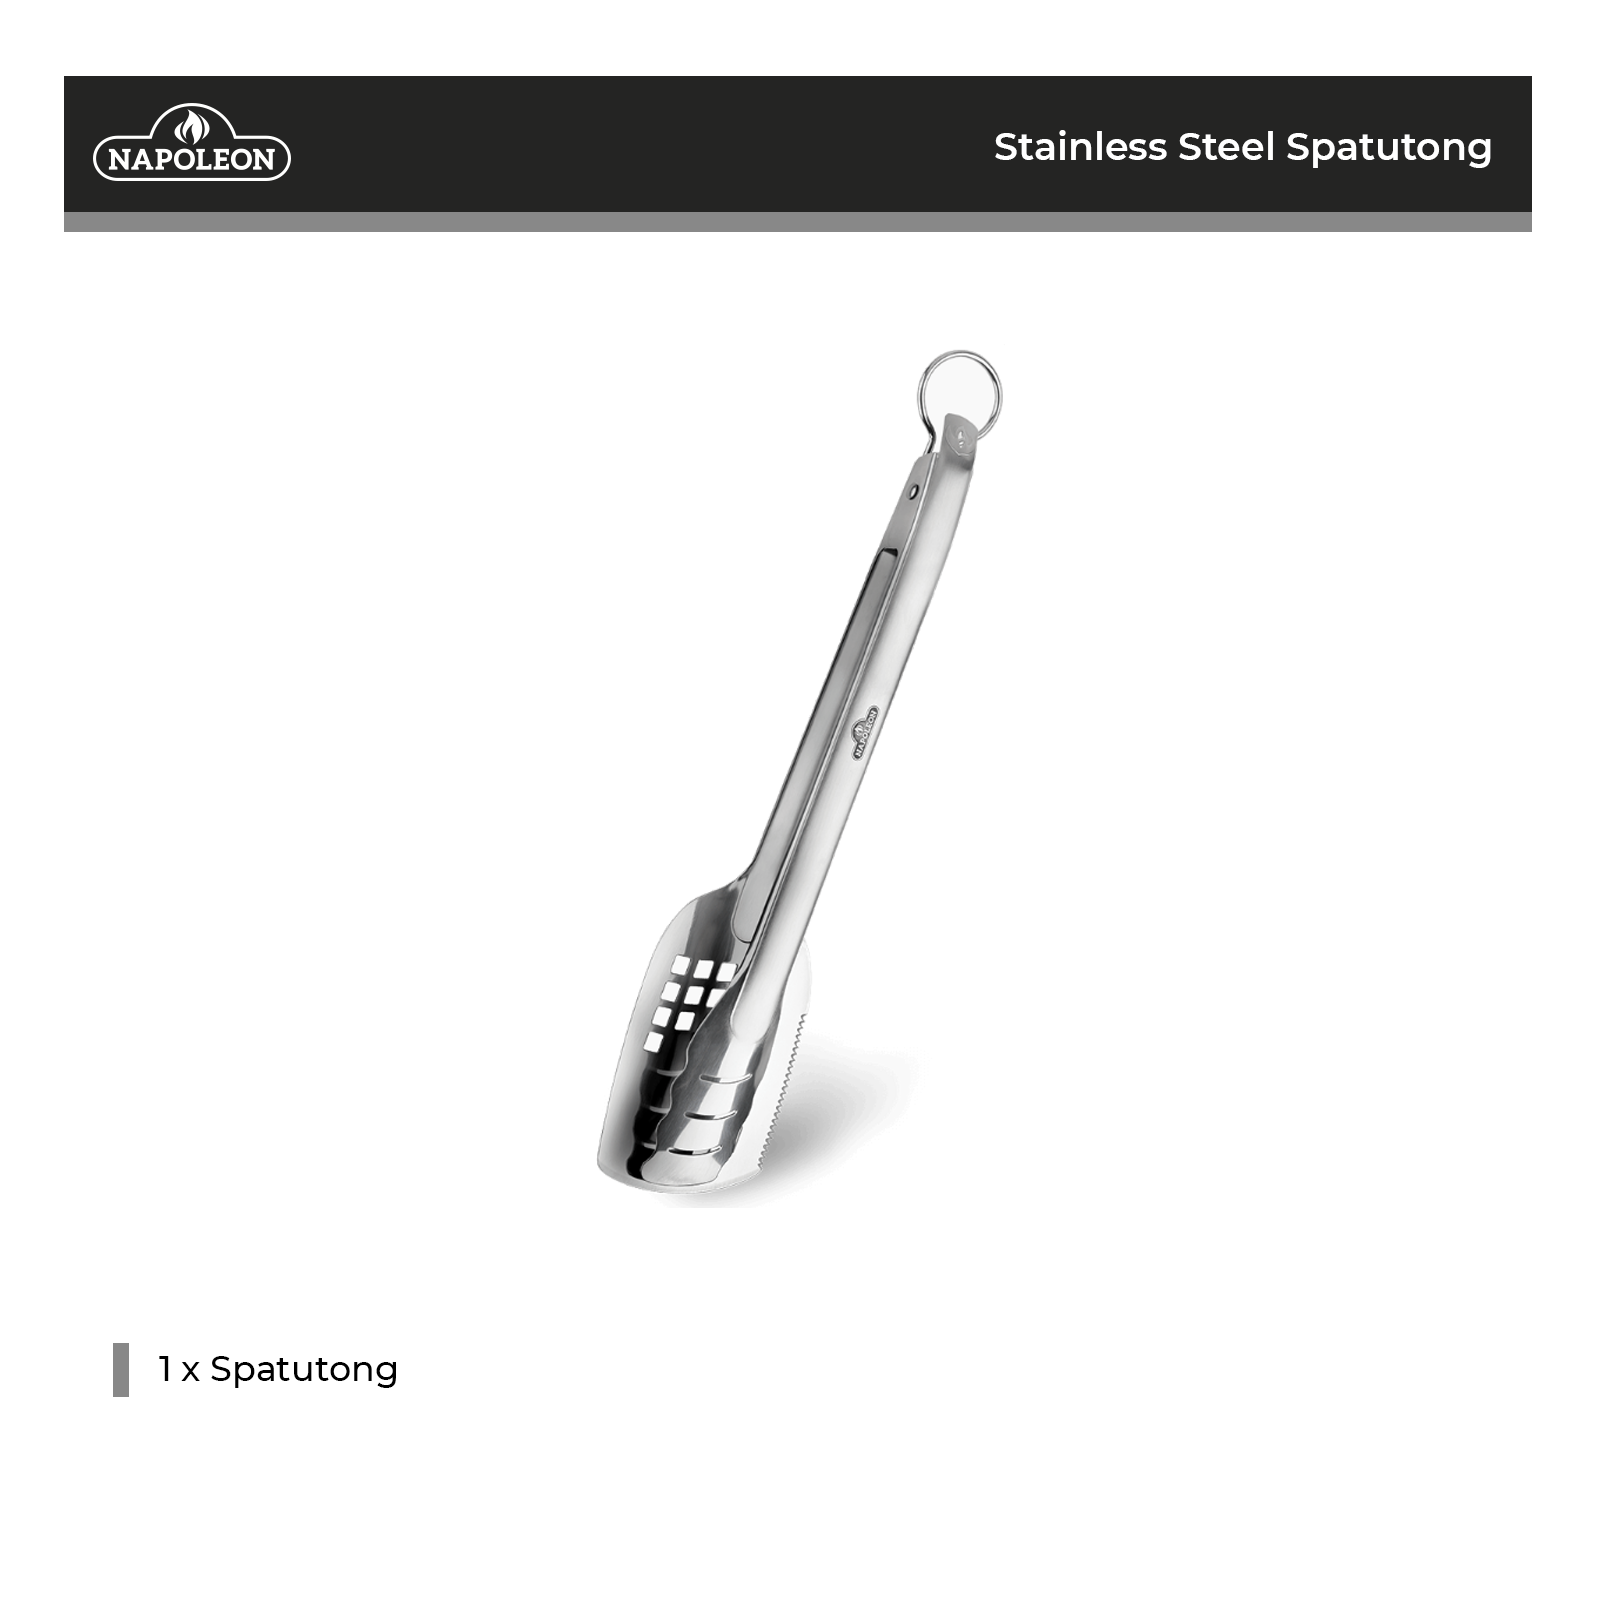 Napoleon Stainless Steel Spatutong - 55019